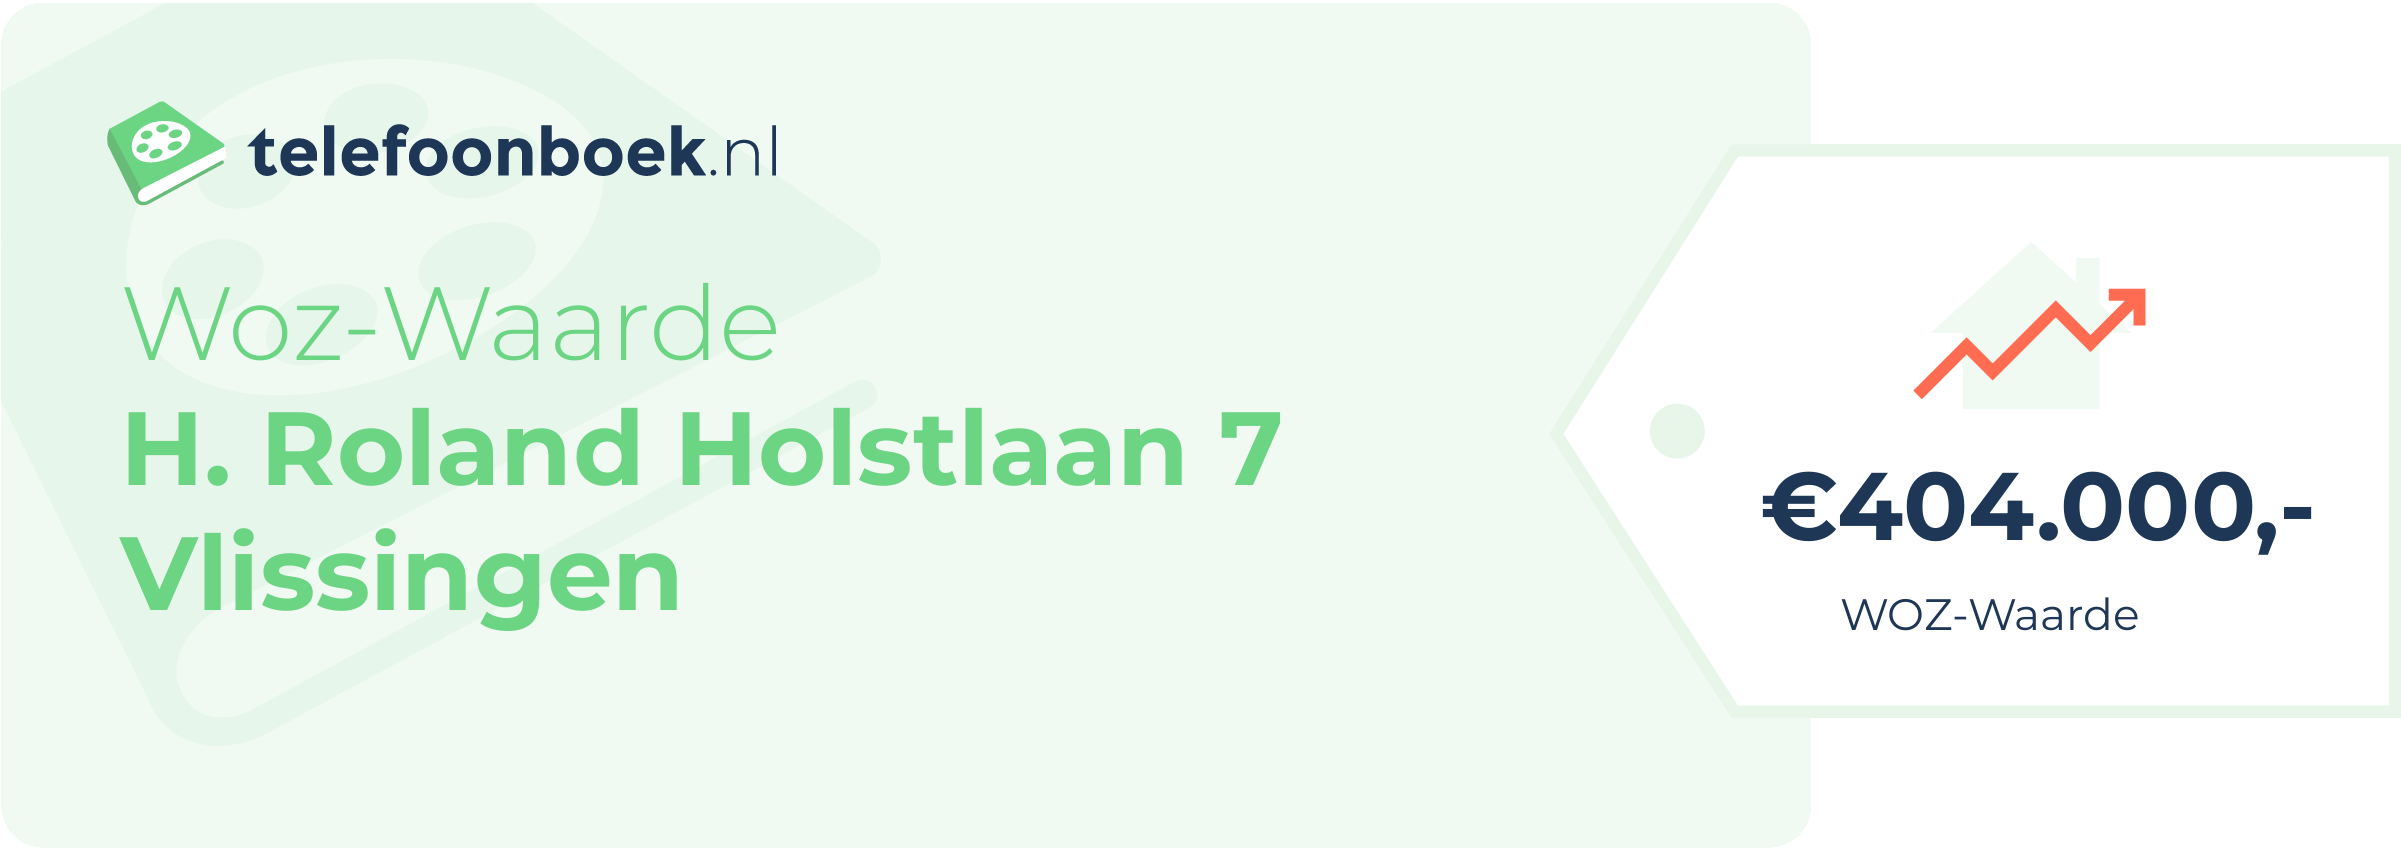 WOZ-waarde H. Roland Holstlaan 7 Vlissingen